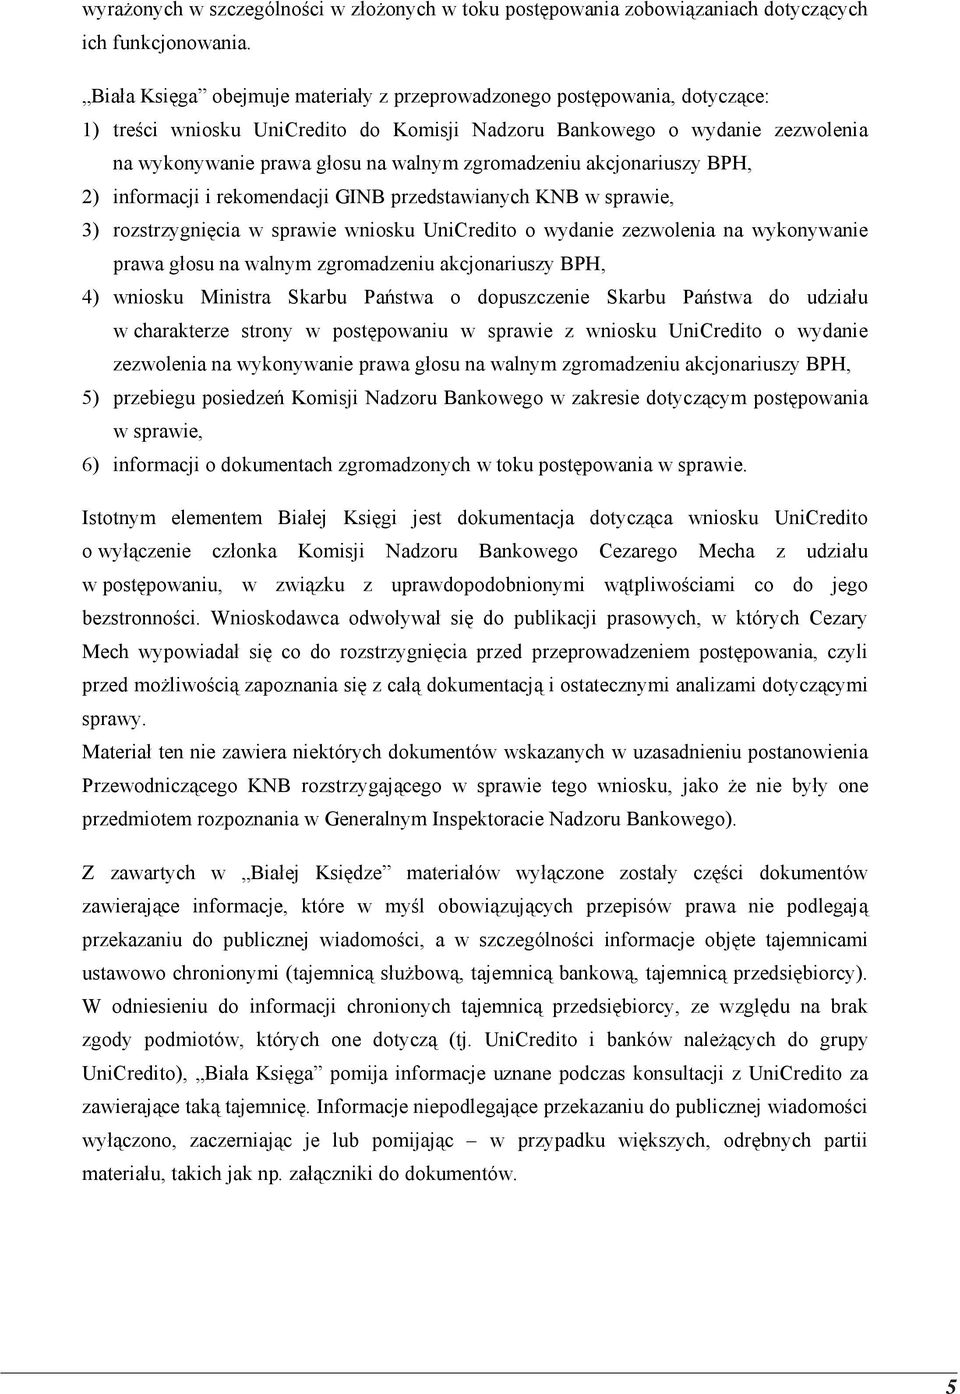 zgromadzeniu akcjonariuszy BPH, 2) informacji i rekomendacji GINB przedstawianych KNB w sprawie, 3) rozstrzygnięcia w sprawie wniosku UniCredito o wydanie zezwolenia na wykonywanie prawa głosu na